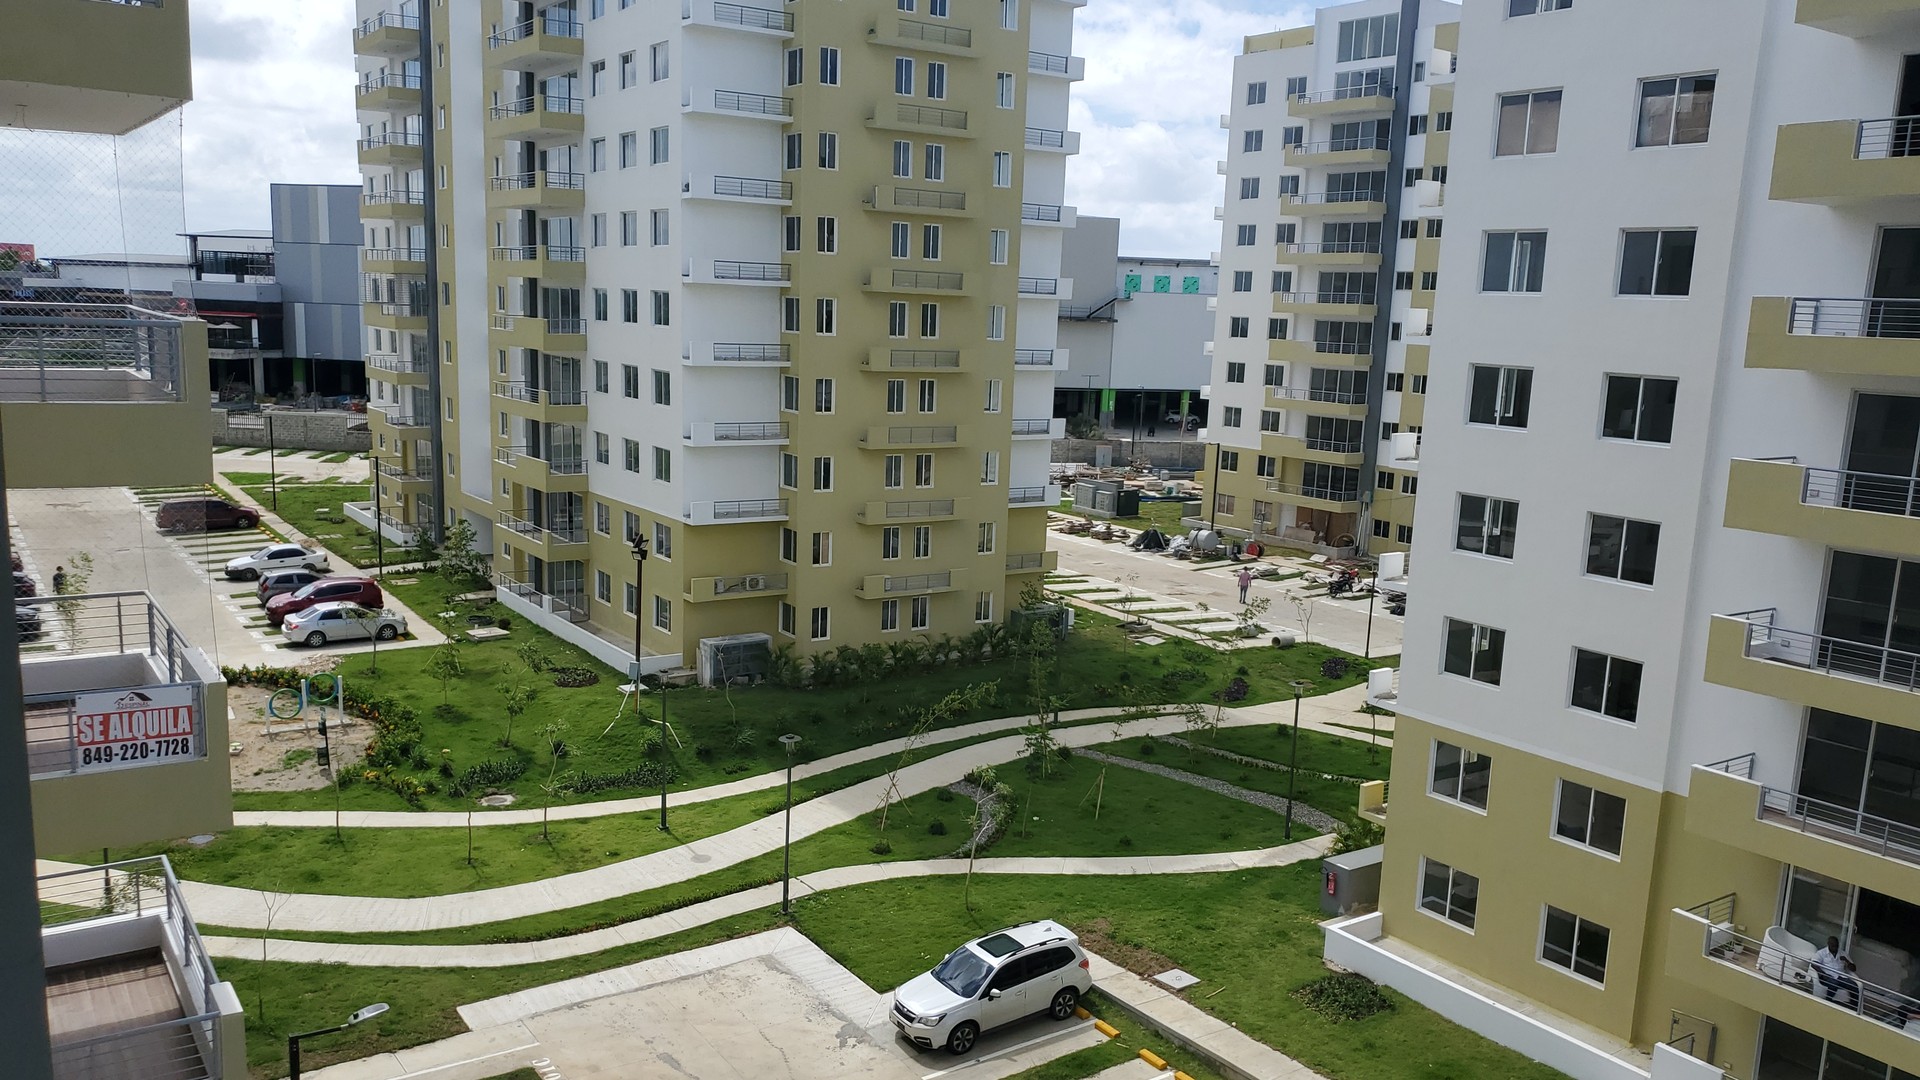 apartamentos - Alquilo apto nuevo con piscina, 2 hab, 2.5 baños en la jacobo Santo Domingo Nort 0